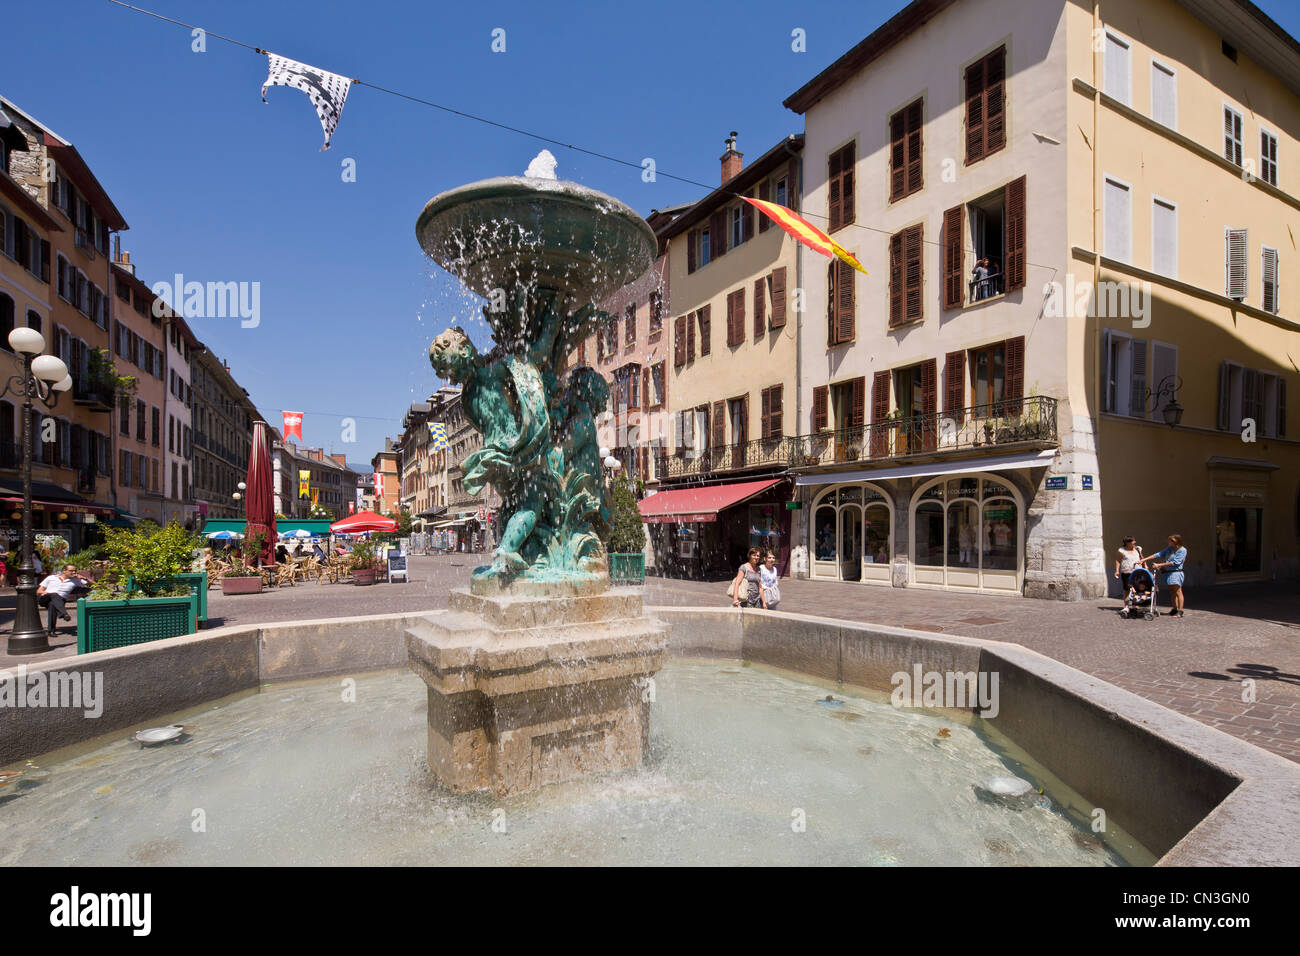 Francia, Savoie, Chambery, la ciudad vieja, querubines de la fuente en la Plaza St Leger Foto de stock